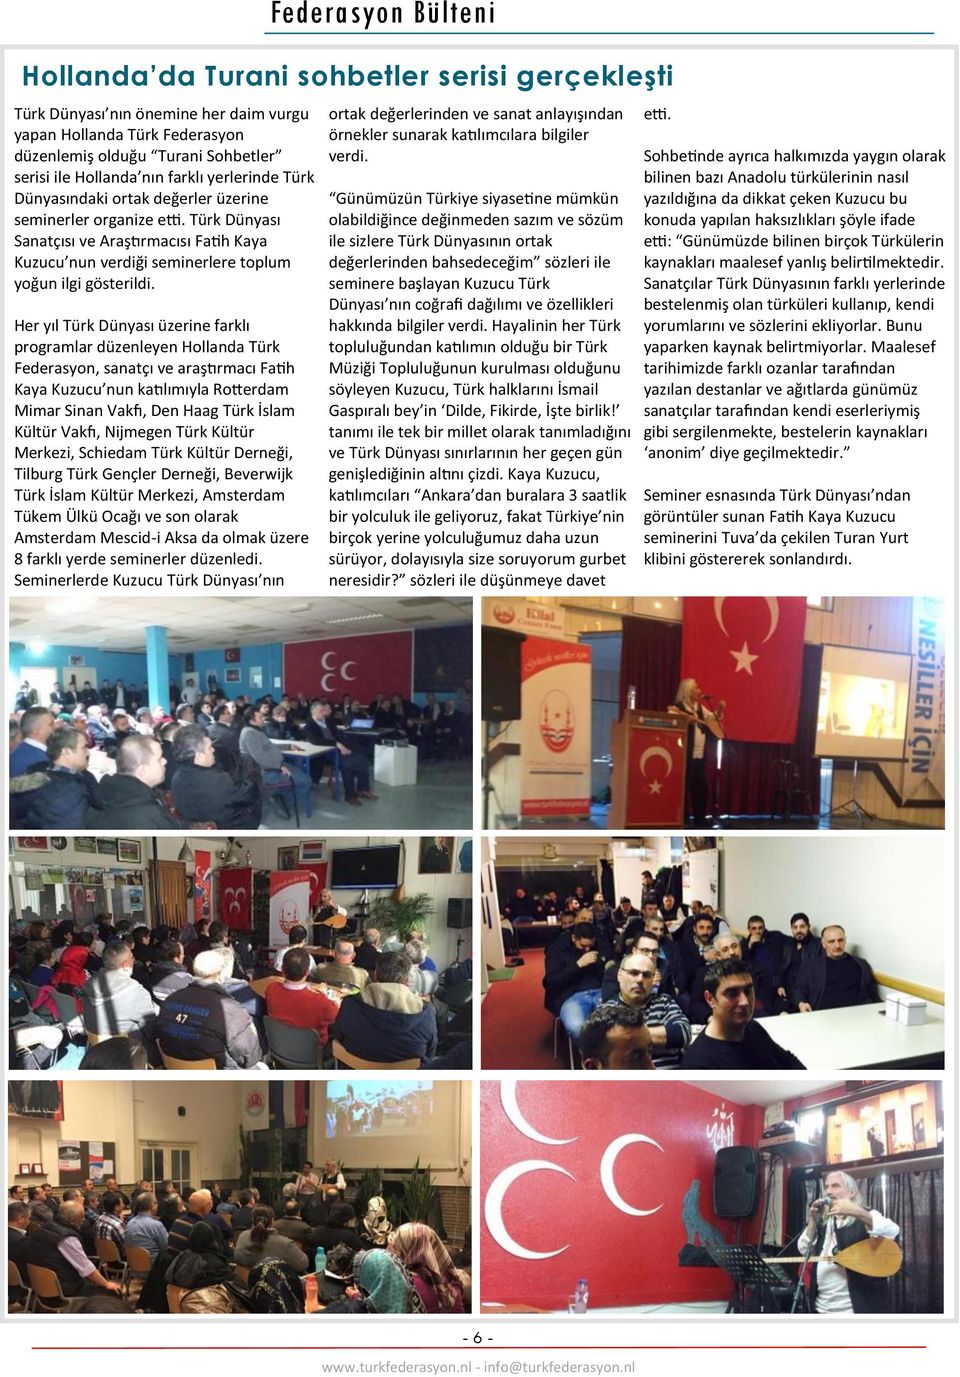 Her yıl Türk Dünyası üzerine farklı programlar düzenleyen Hollanda Türk Federasyon, sanatçı ve araştırmacı Fatih Kaya Kuzucu nun katılımıyla Rotterdam Mimar Sinan Vakfı, Den Haag Türk İslam Kültür